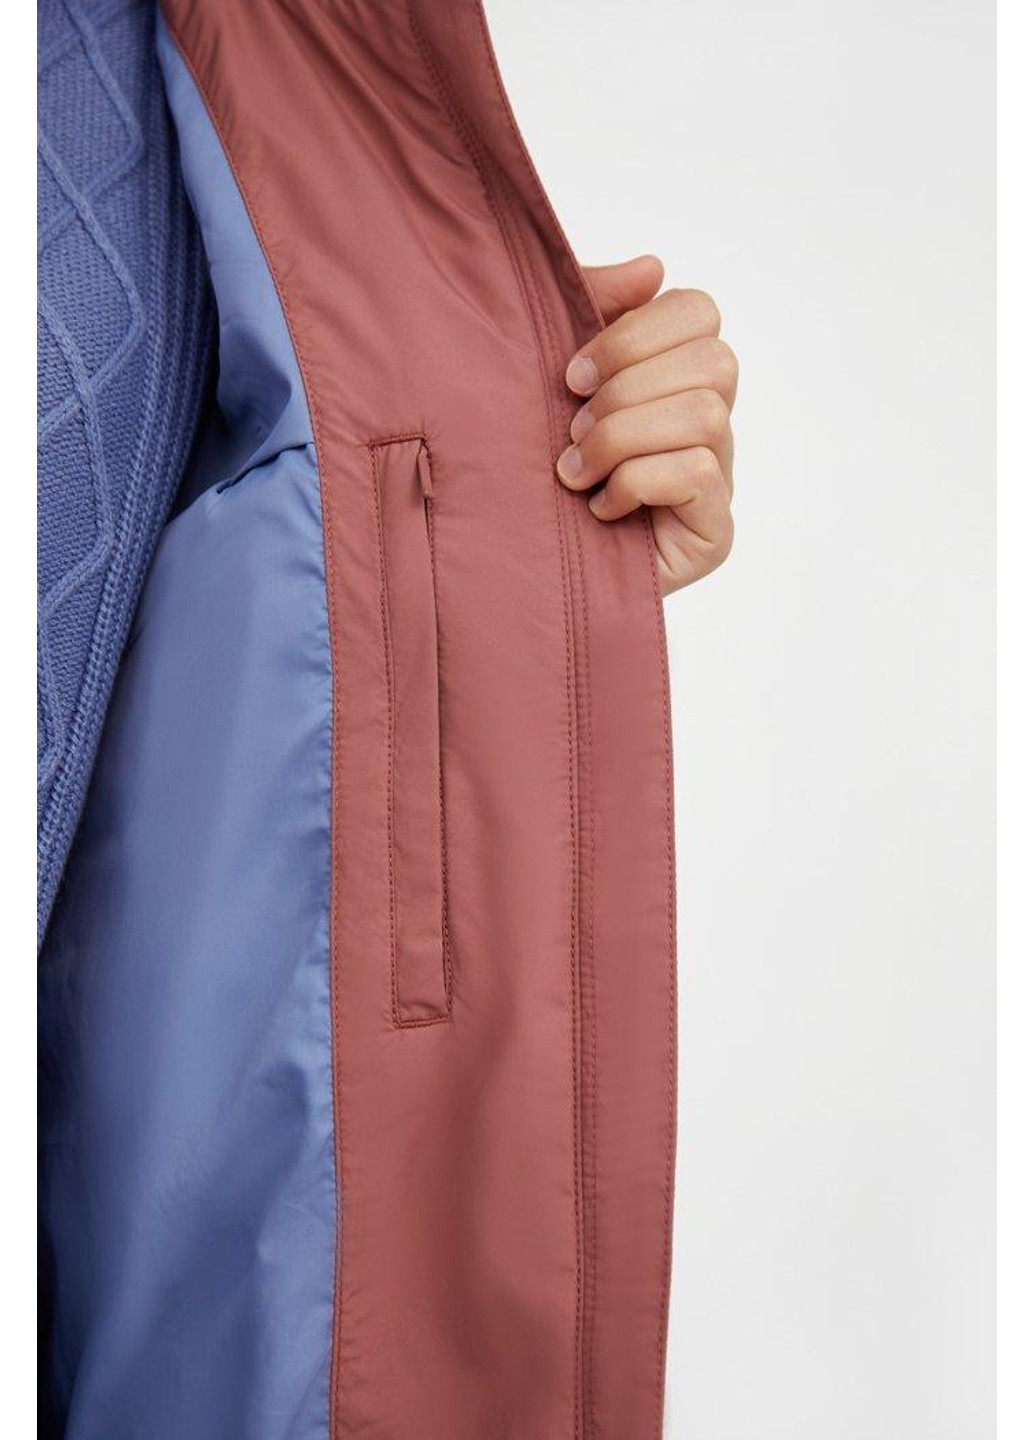 Розовая демисезонная пальто a20-12056-320 Finn Flare